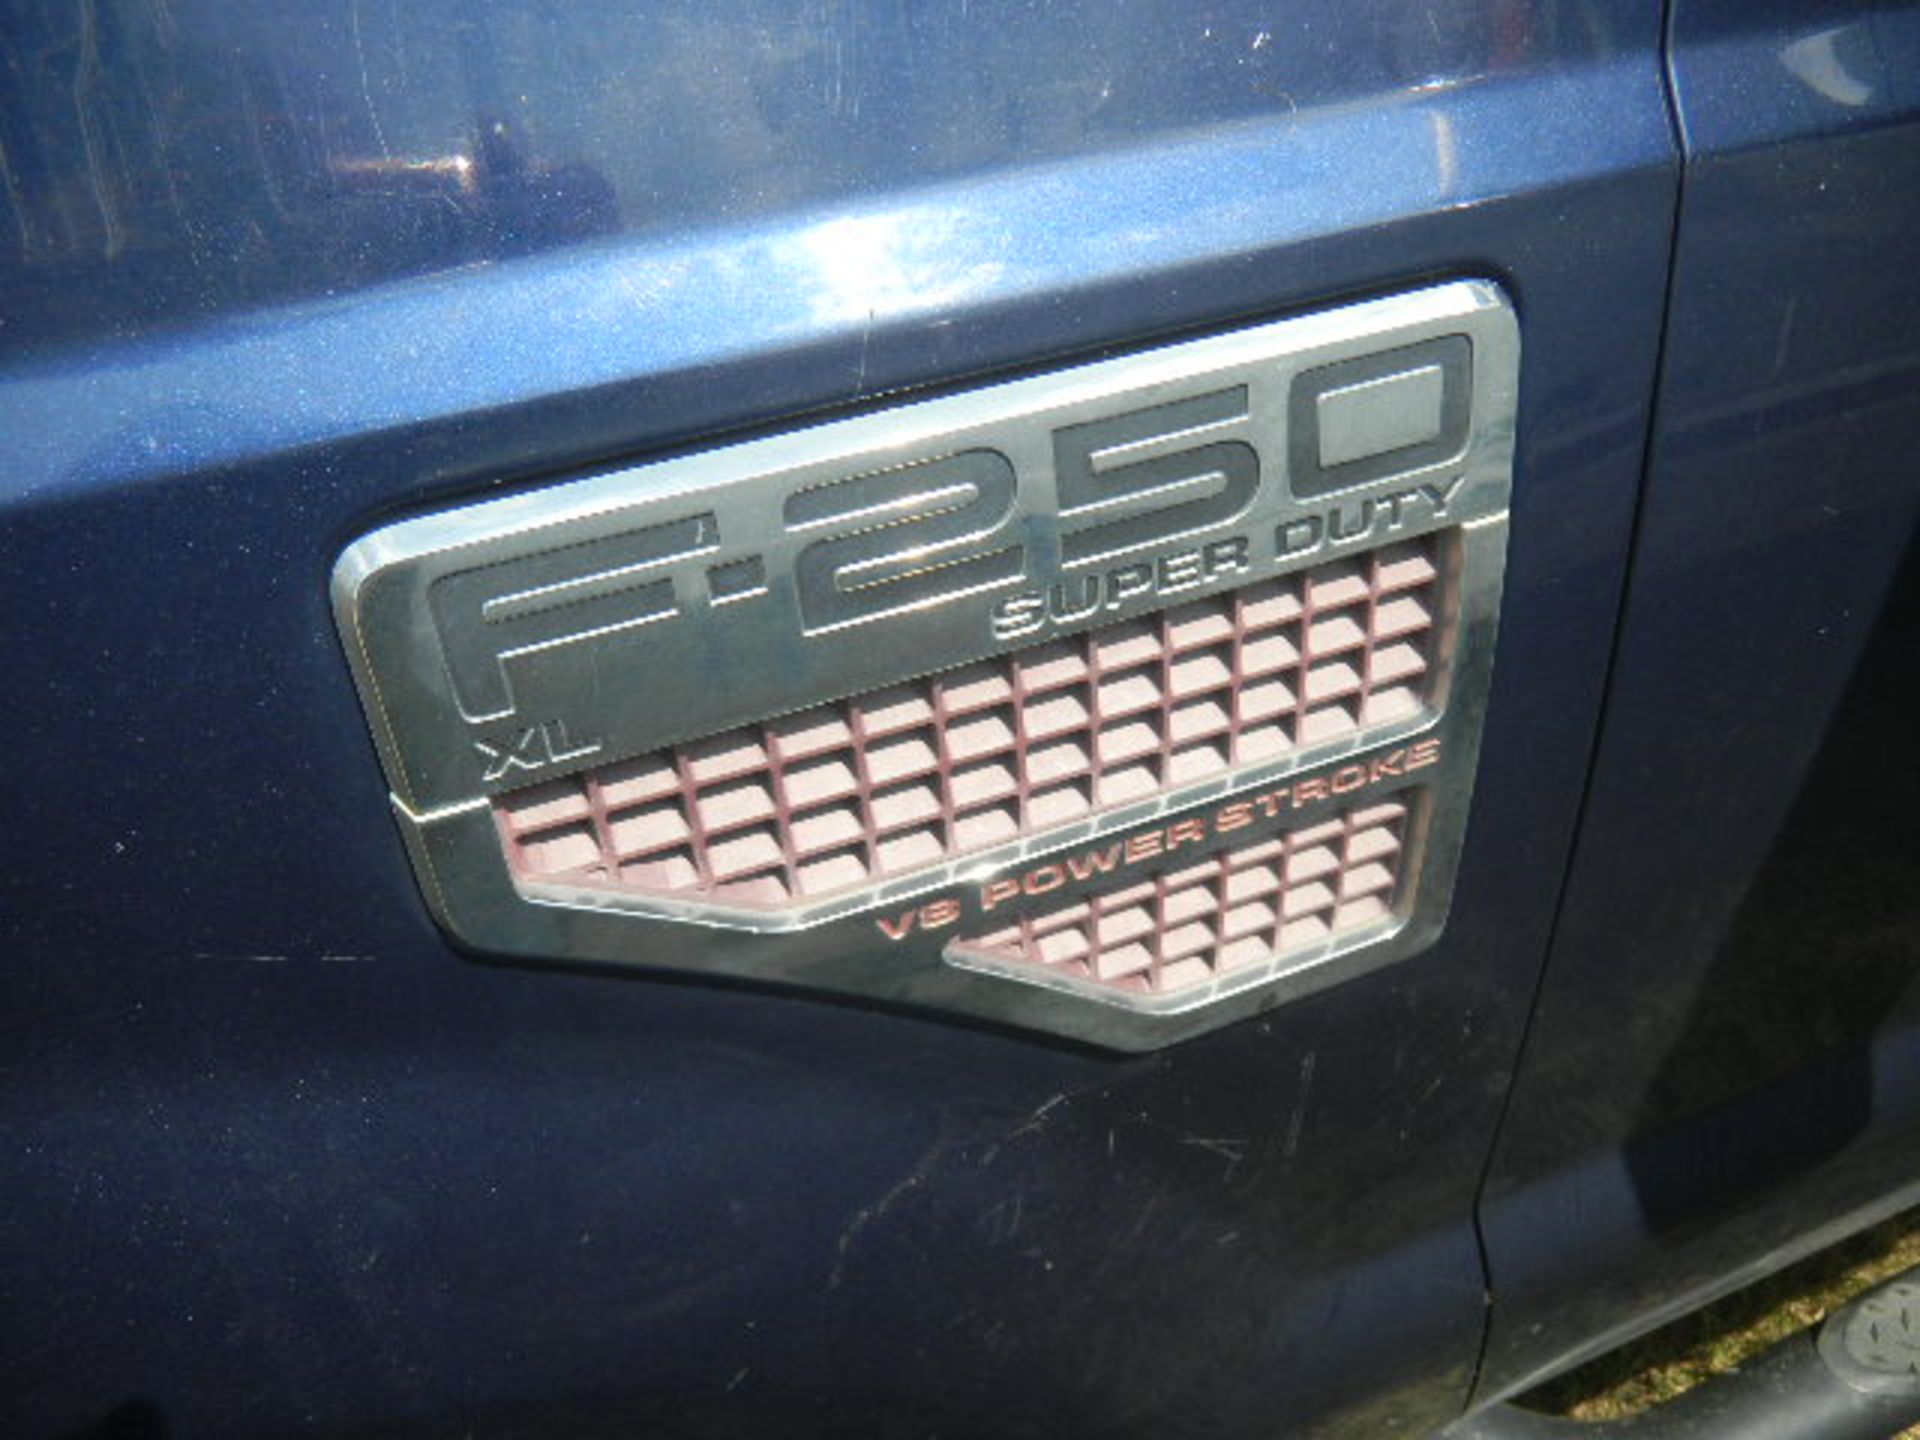 2009 Ford F250 4x4 Super Cab Long Bed Pickup - Asset I.D. #328 - Last of Vin (EA11748) - Image 5 of 11